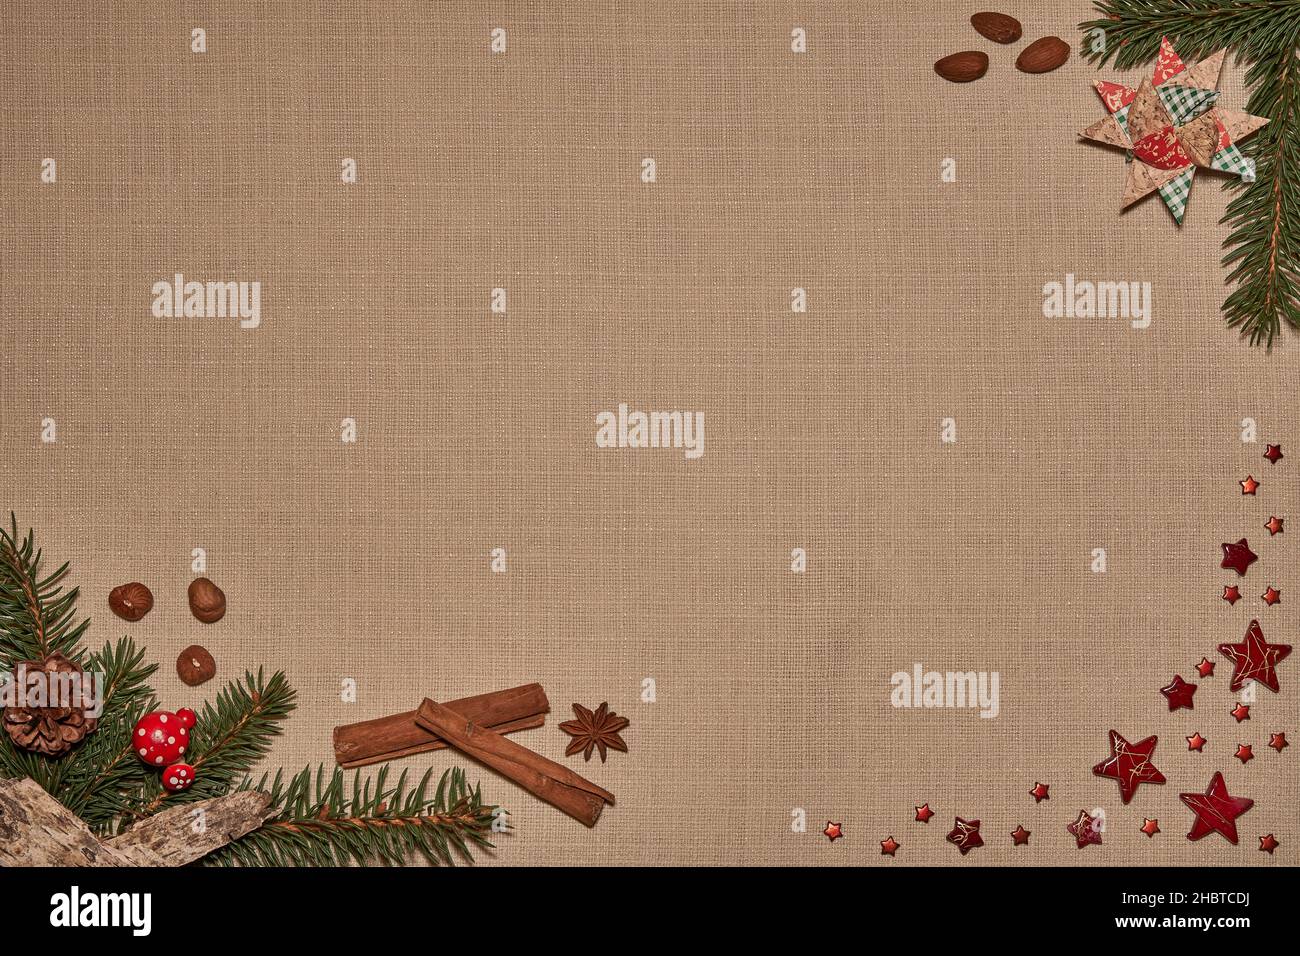 Weihnachtliches Hintergrundmotiv mit Tannenzweigen, Sternen, Nüssen, Mandeln und Gewürzen auf Textilgewebe Stock Photo